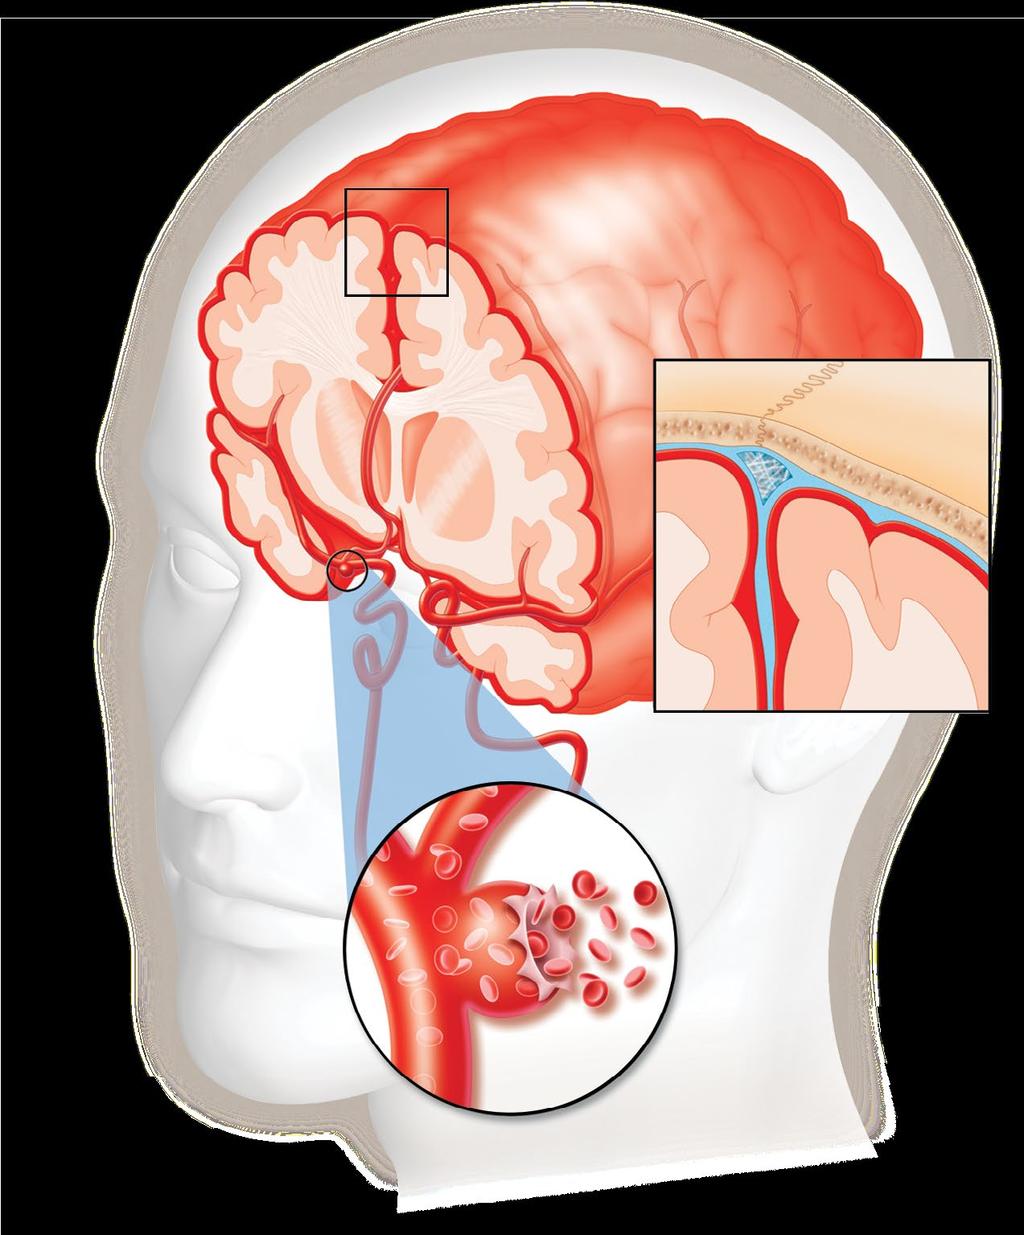 Hemorragia subaracnoidea Espacio subaracnoideo Arteria cerebral media Aneurisma sacular Espacio subaracnoideo (en azul) entre el cráneo y el cerebro (vista ampliada) Otro tipo de ataque